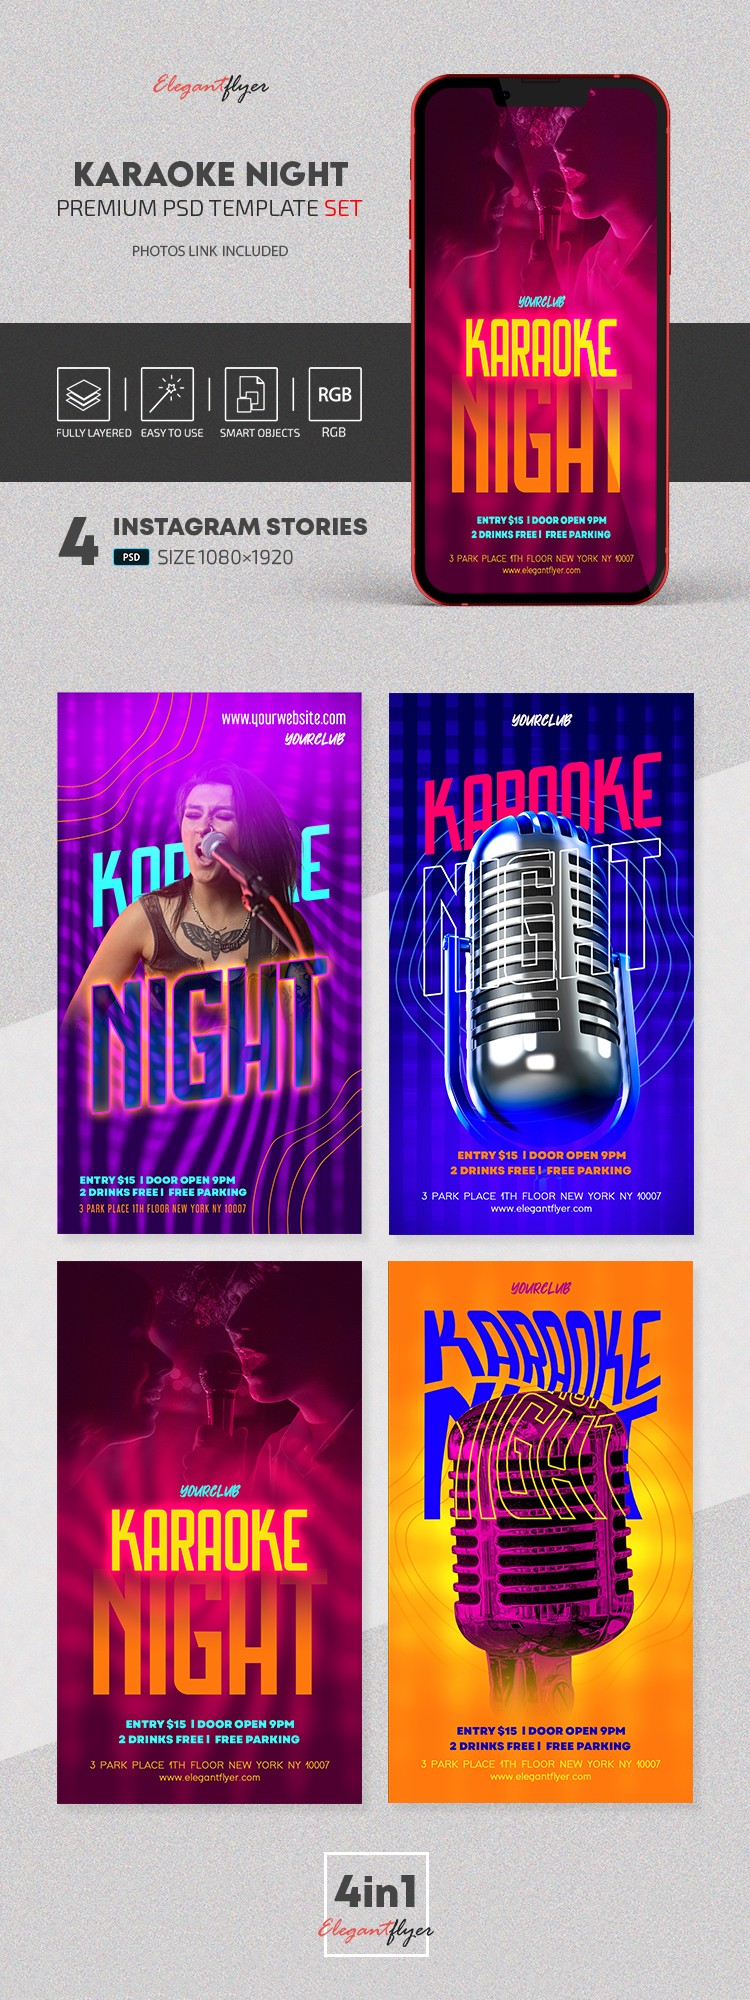 Karaoke Night Instagram by ElegantFlyer